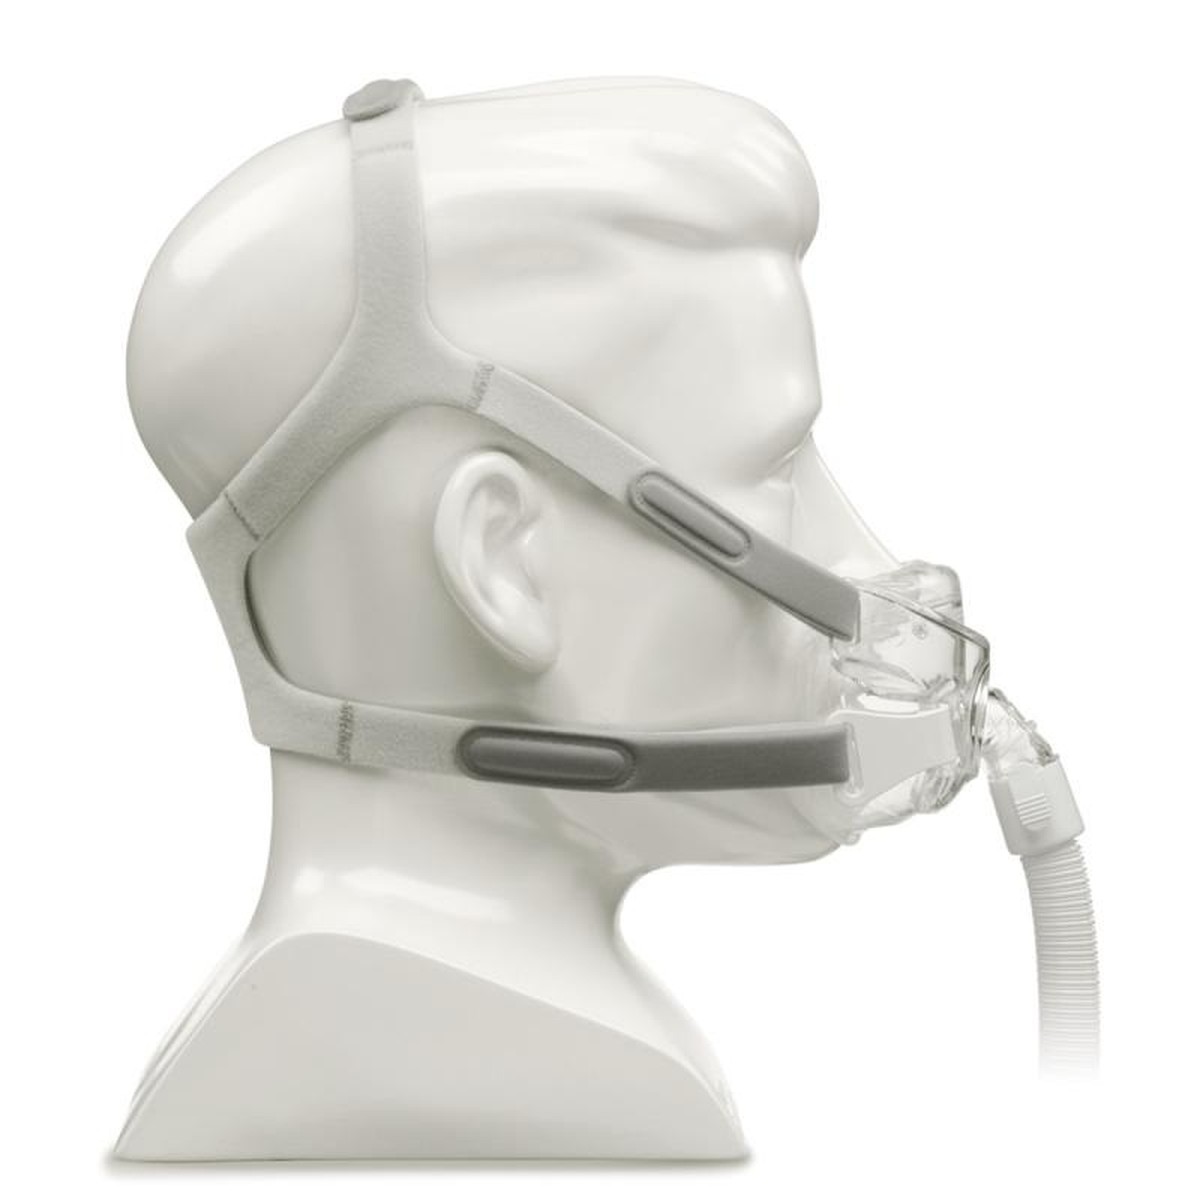 Foto do produto Máscara facial Amara View - Philips Respironics